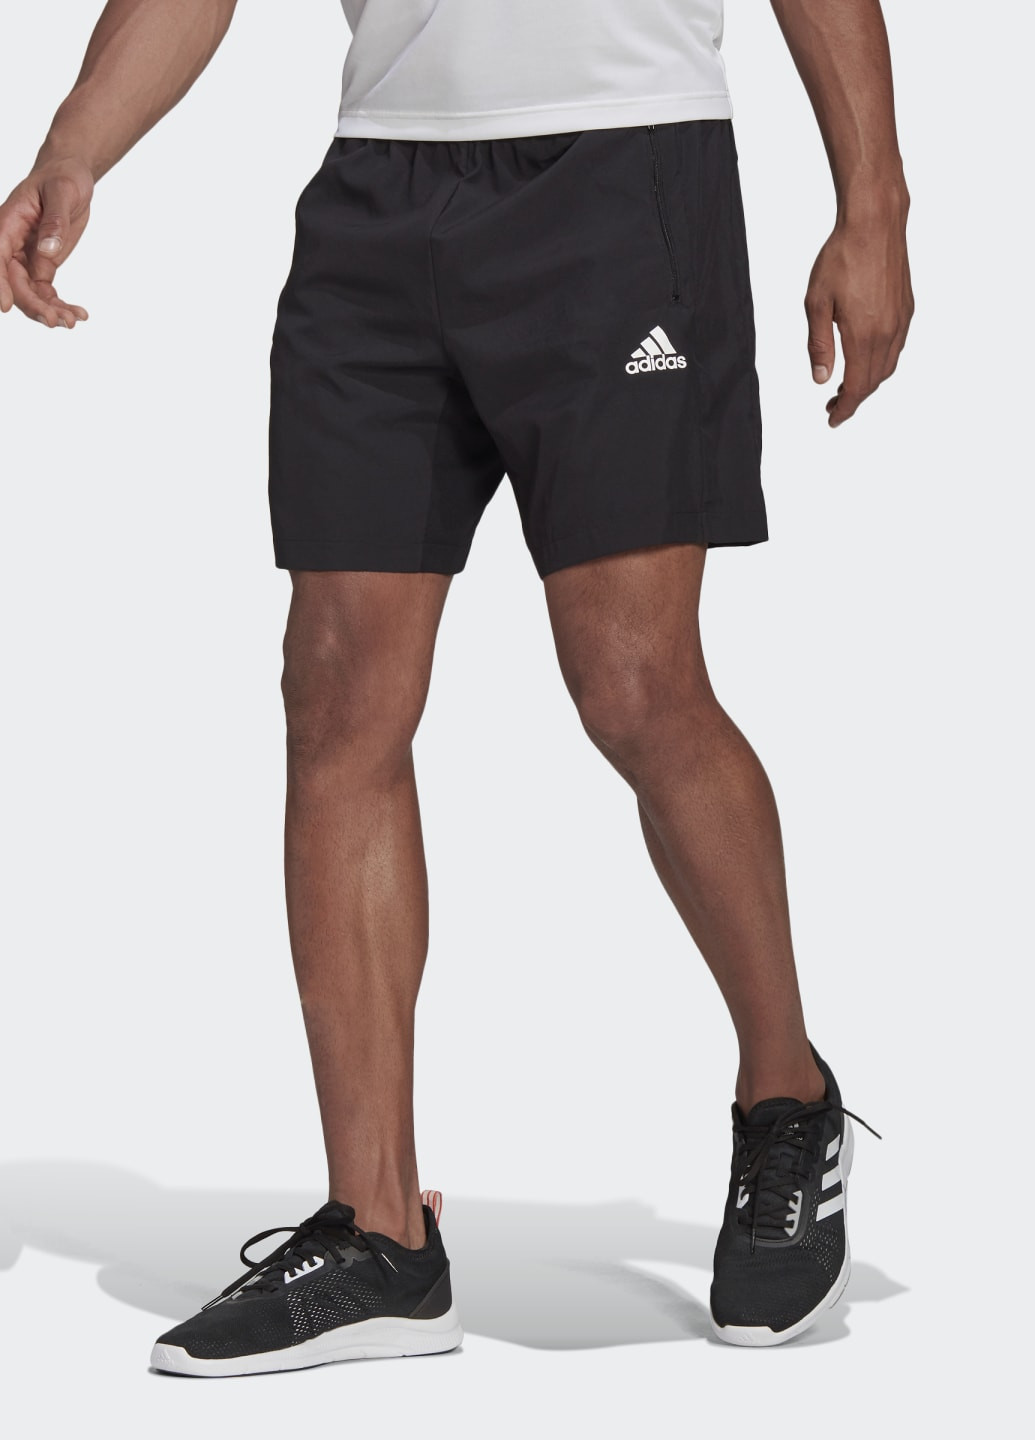 Спортивные шорты AEROREADY Designed 2 Move adidas логотипы чёрные  спортивные ‣ Купить в интернет-магазине Каста ‣ Киев, Одесса, Харьков ‣  Доставка по всей Украине! (#253127497)